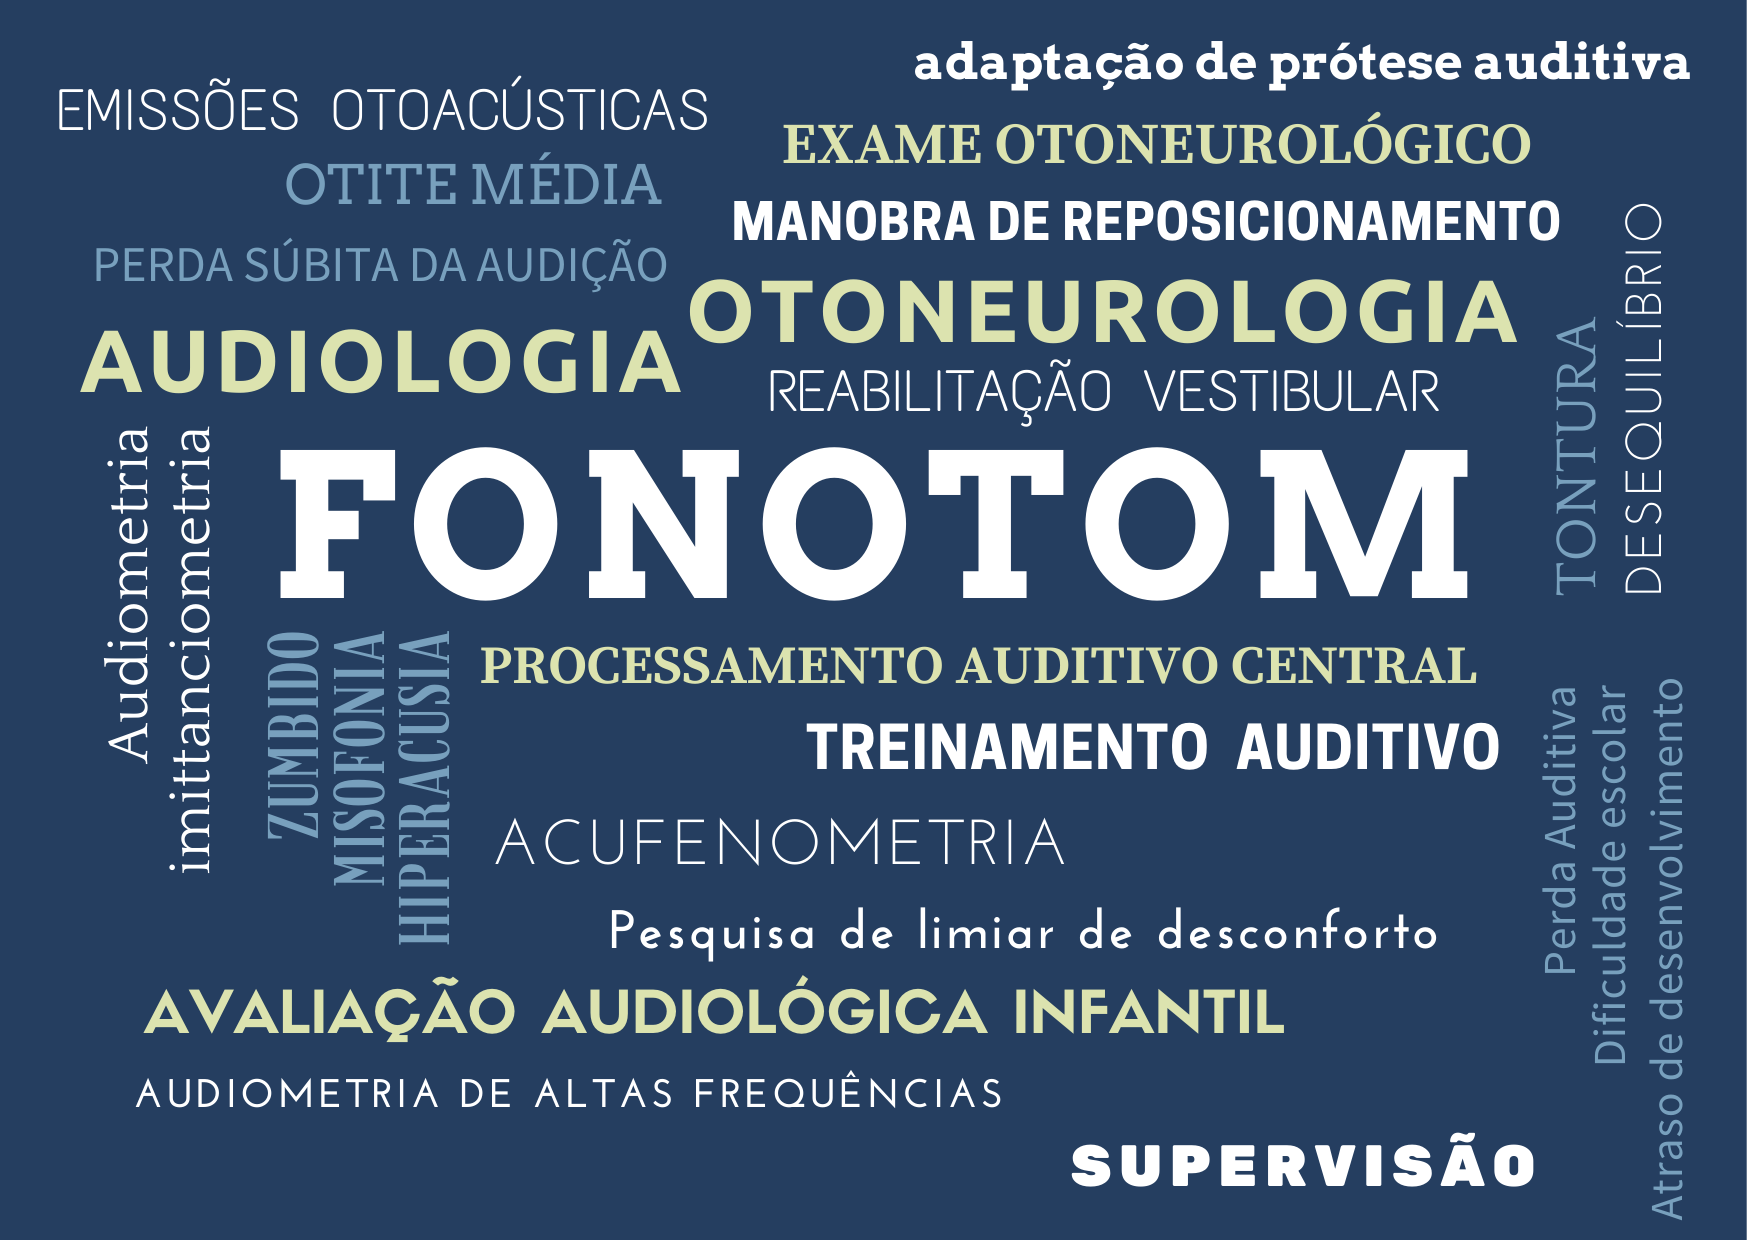 Você conhece os exames e consultas em fonoaudiologia que realizamos?